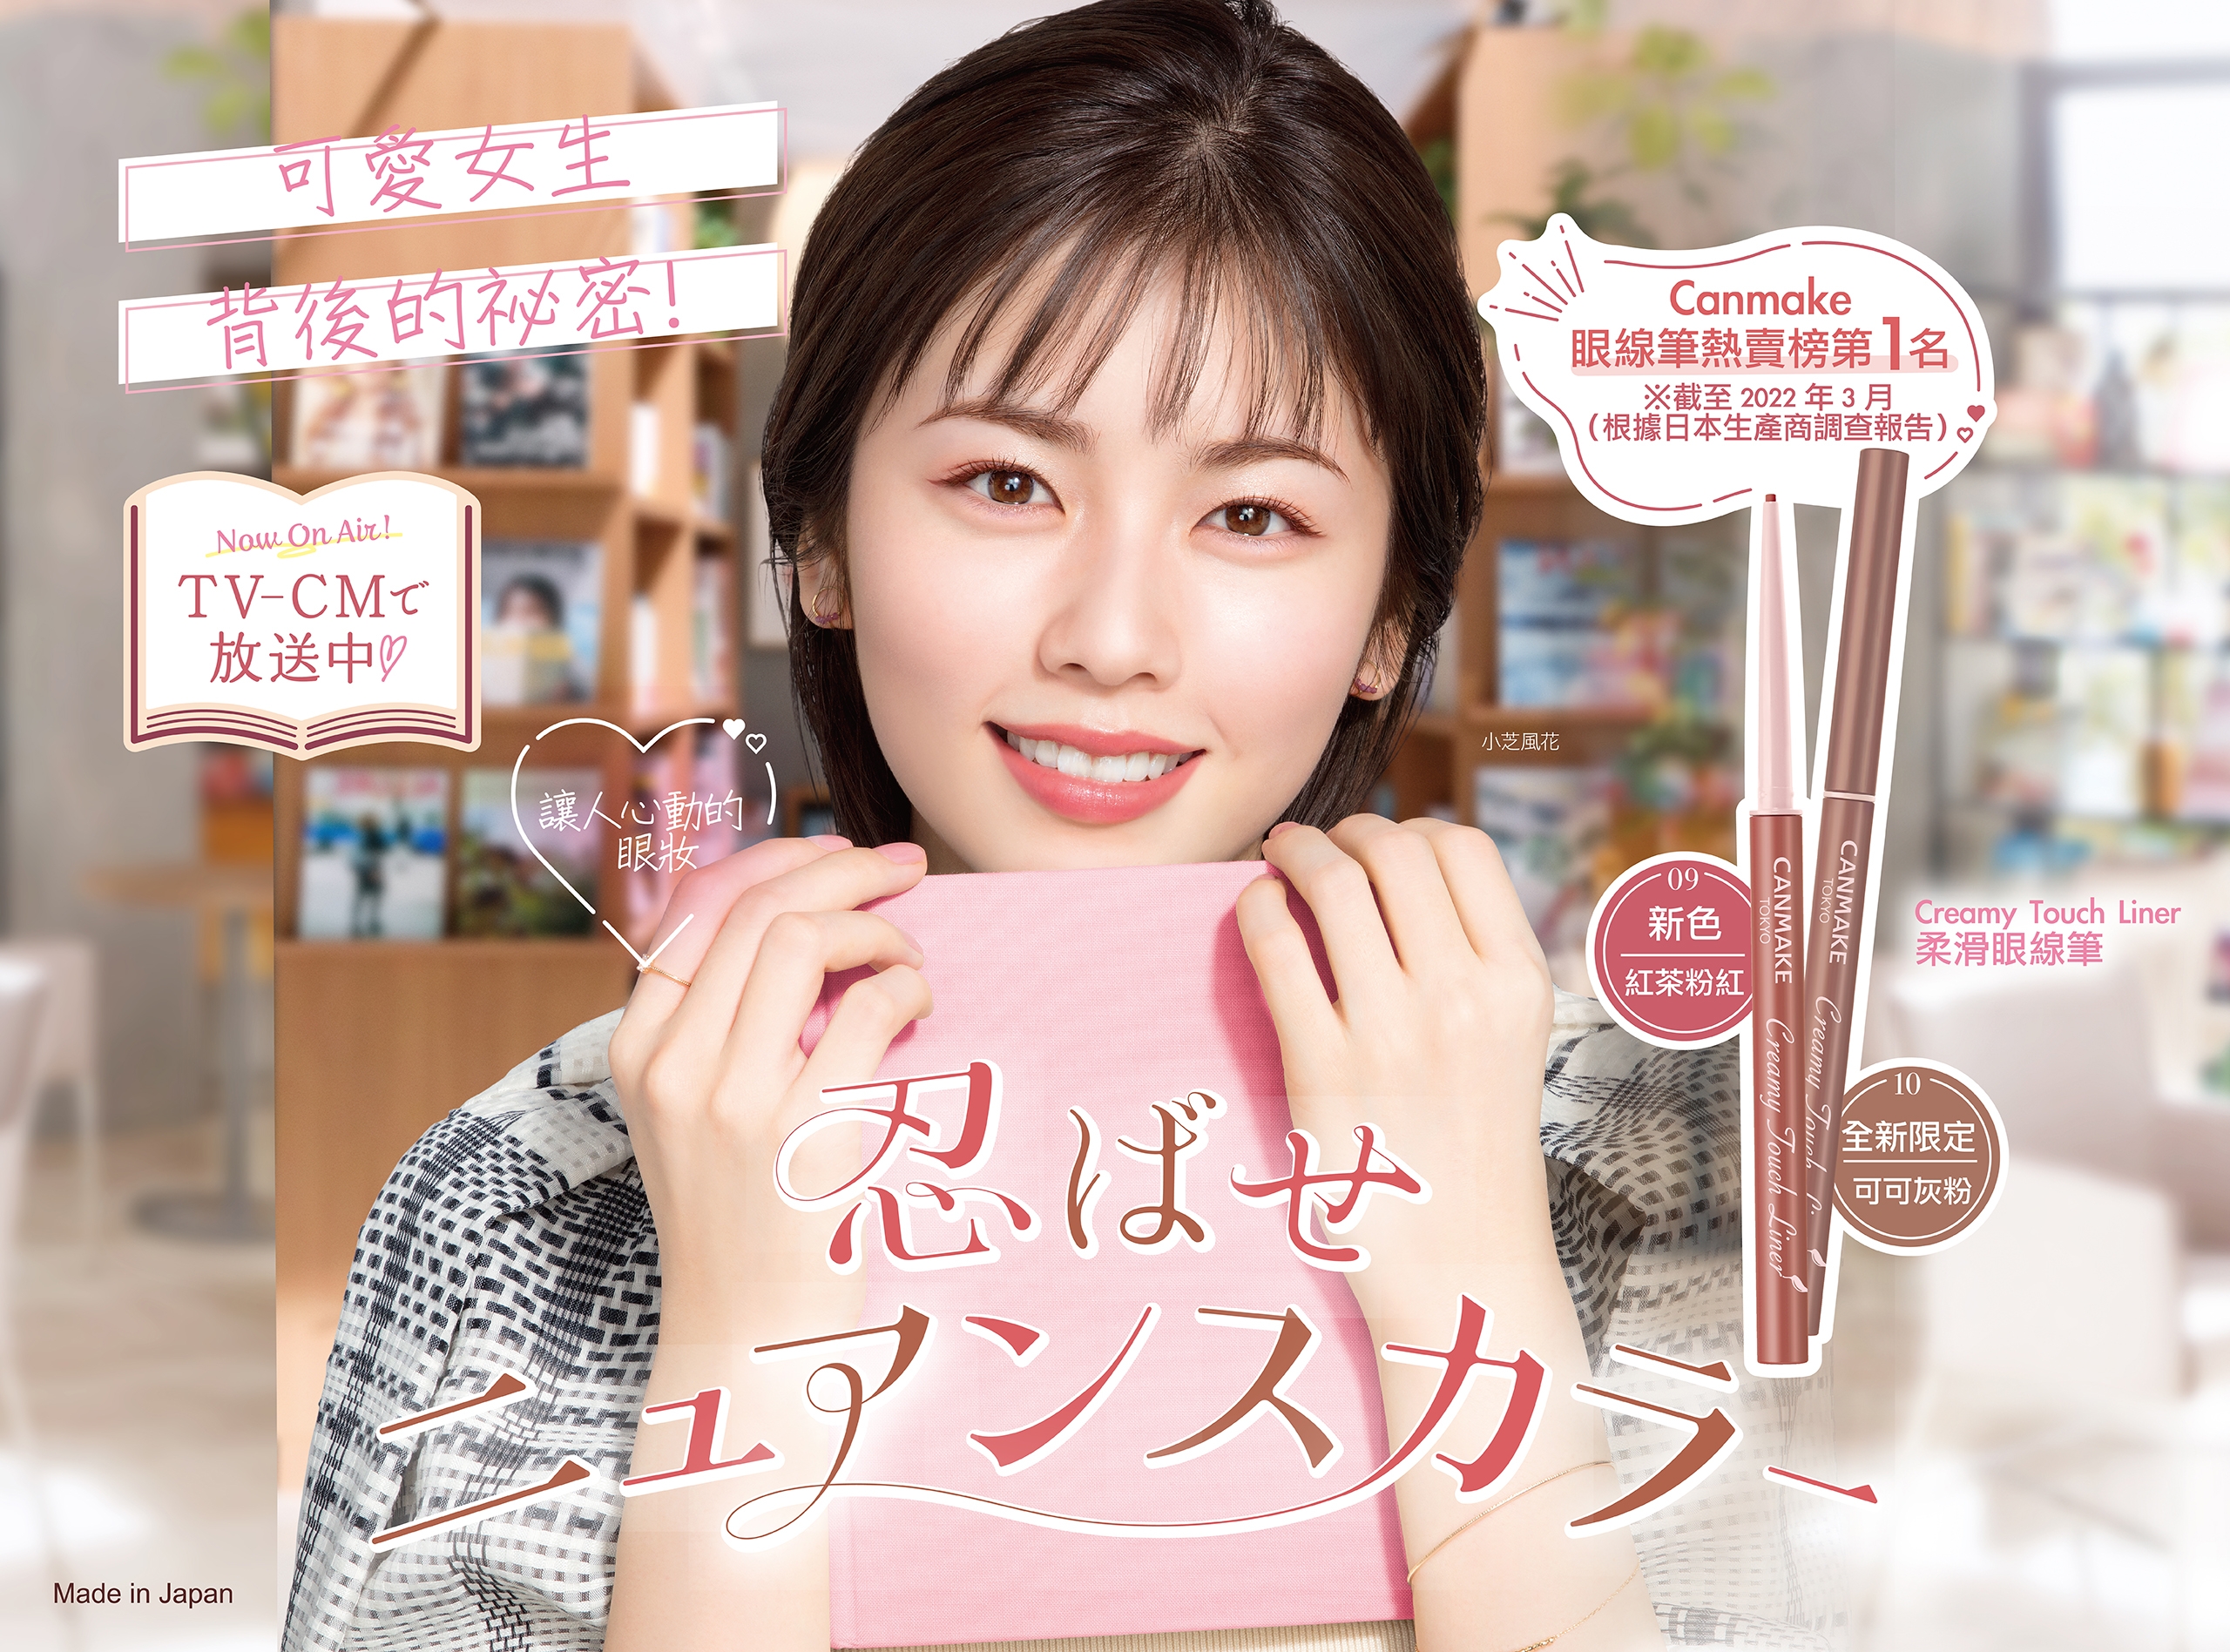 低調又富神采的啡粉紅調😍日本可愛女生背後的祕密